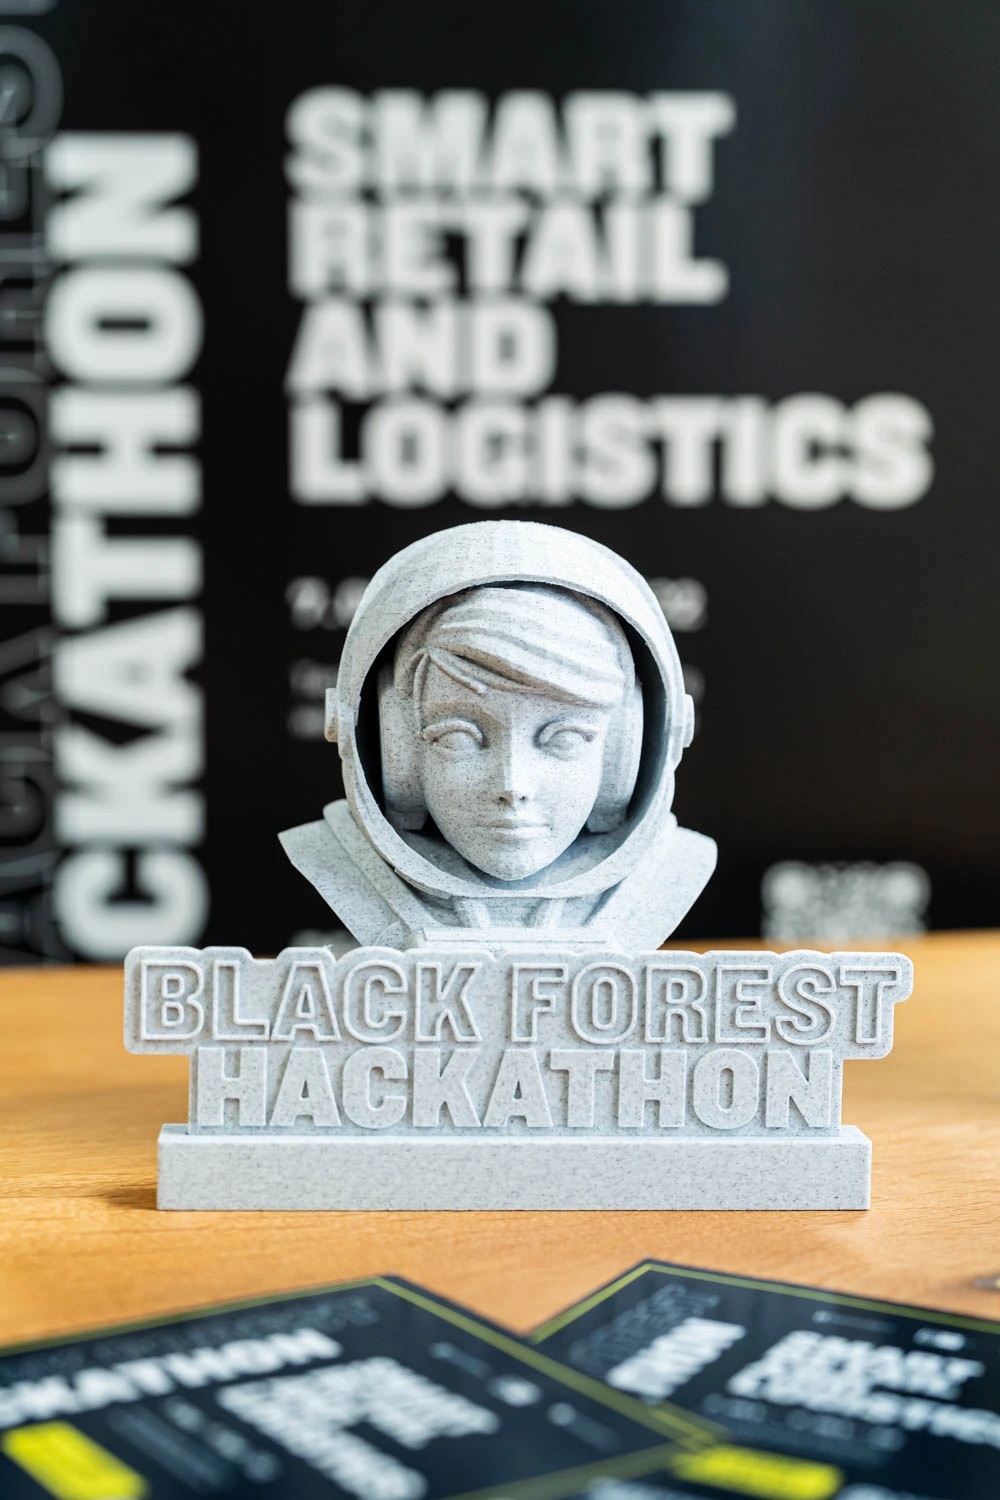 Black Forest Hackathon - 3D Printed Astronaut statue